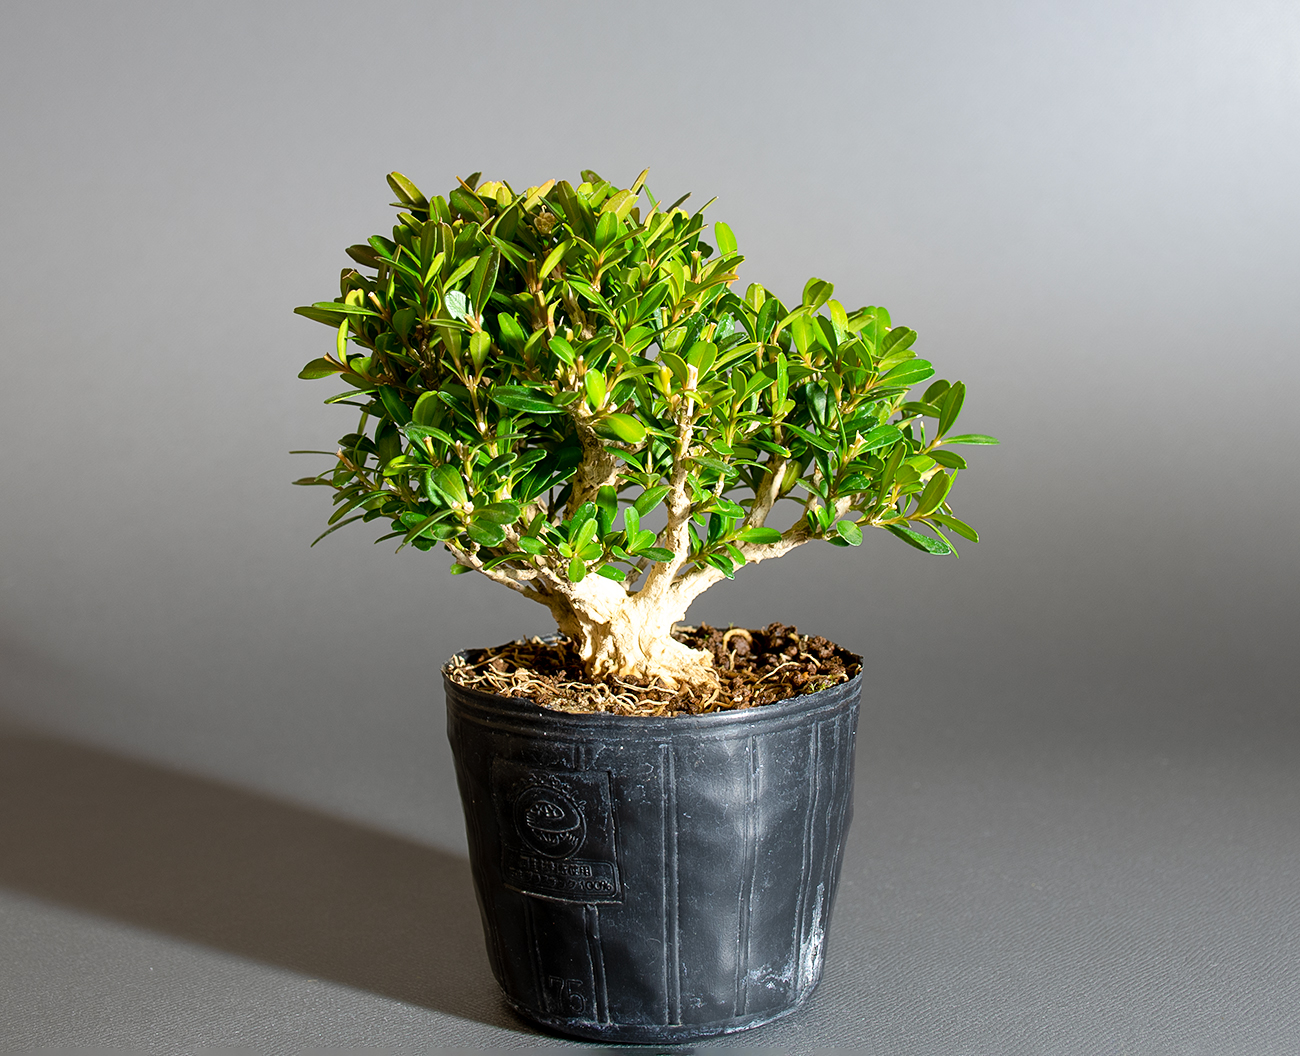 タイワンツゲ-D1（たいわんつげ・台湾黄楊）実もの盆栽の販売と育て方・作り方・Buxus microphylla var.japonica bonsai